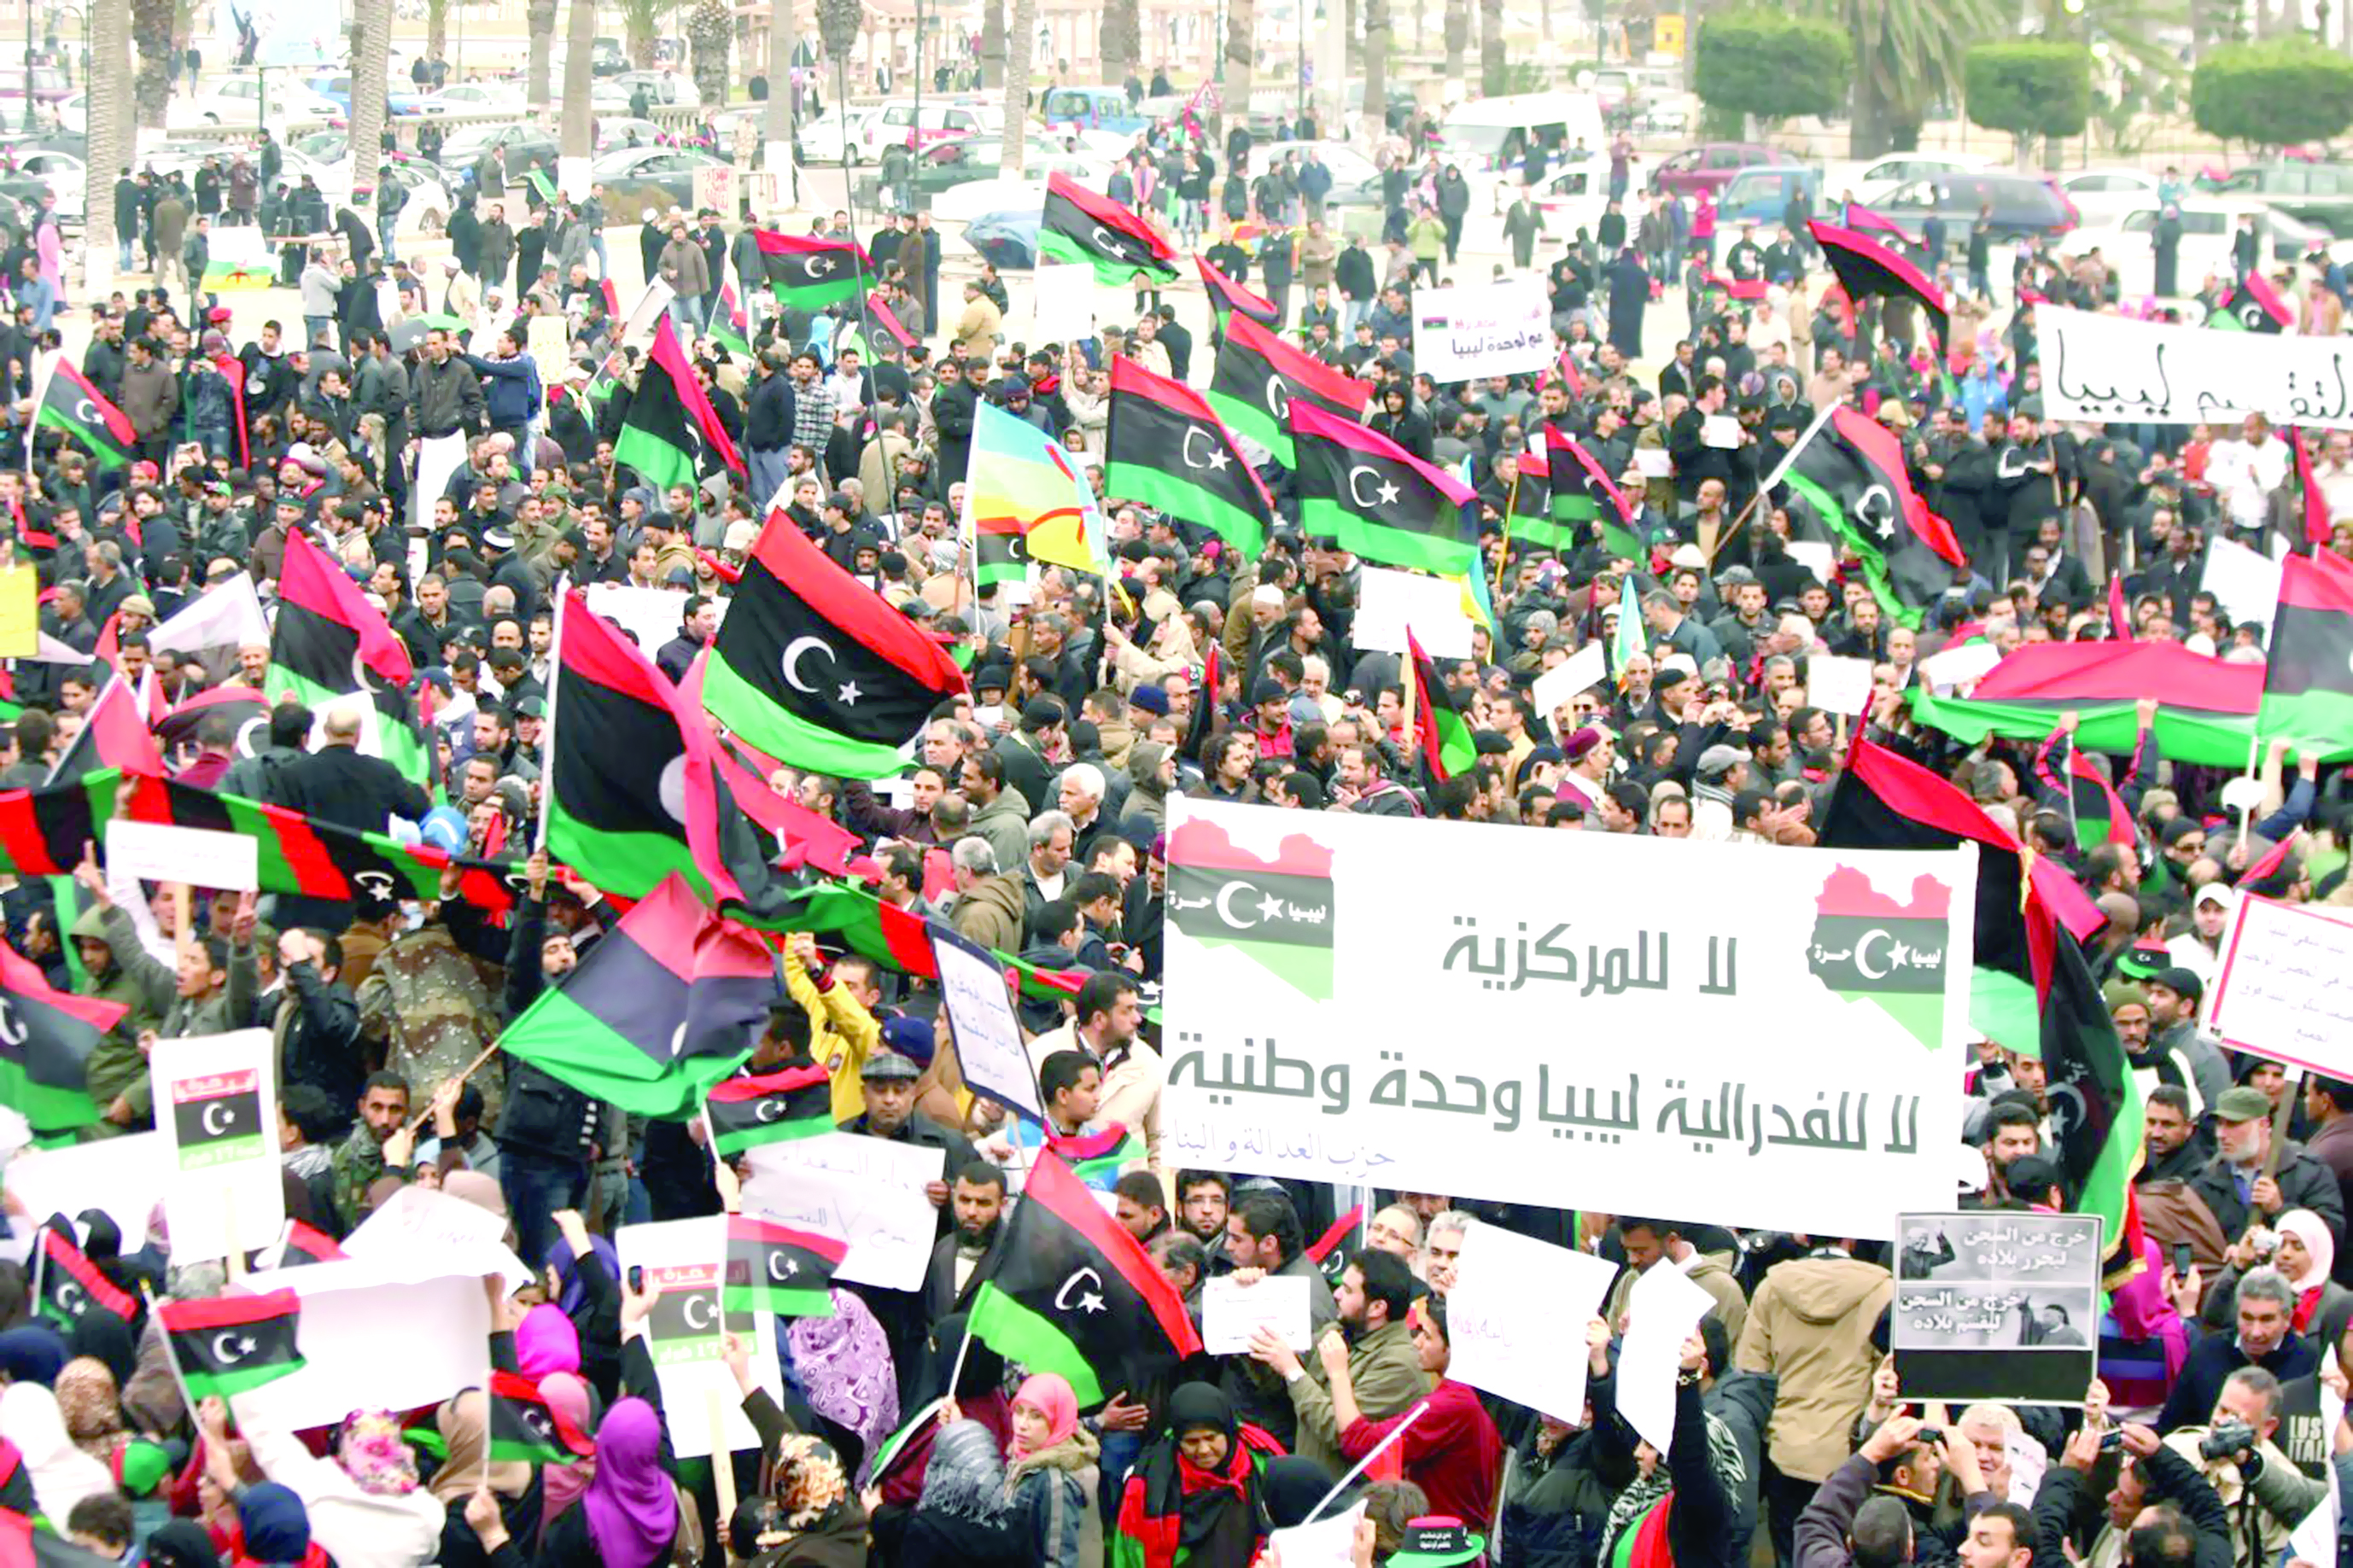 كوبلر: الوضع الإنساني في ليبيا كارثي